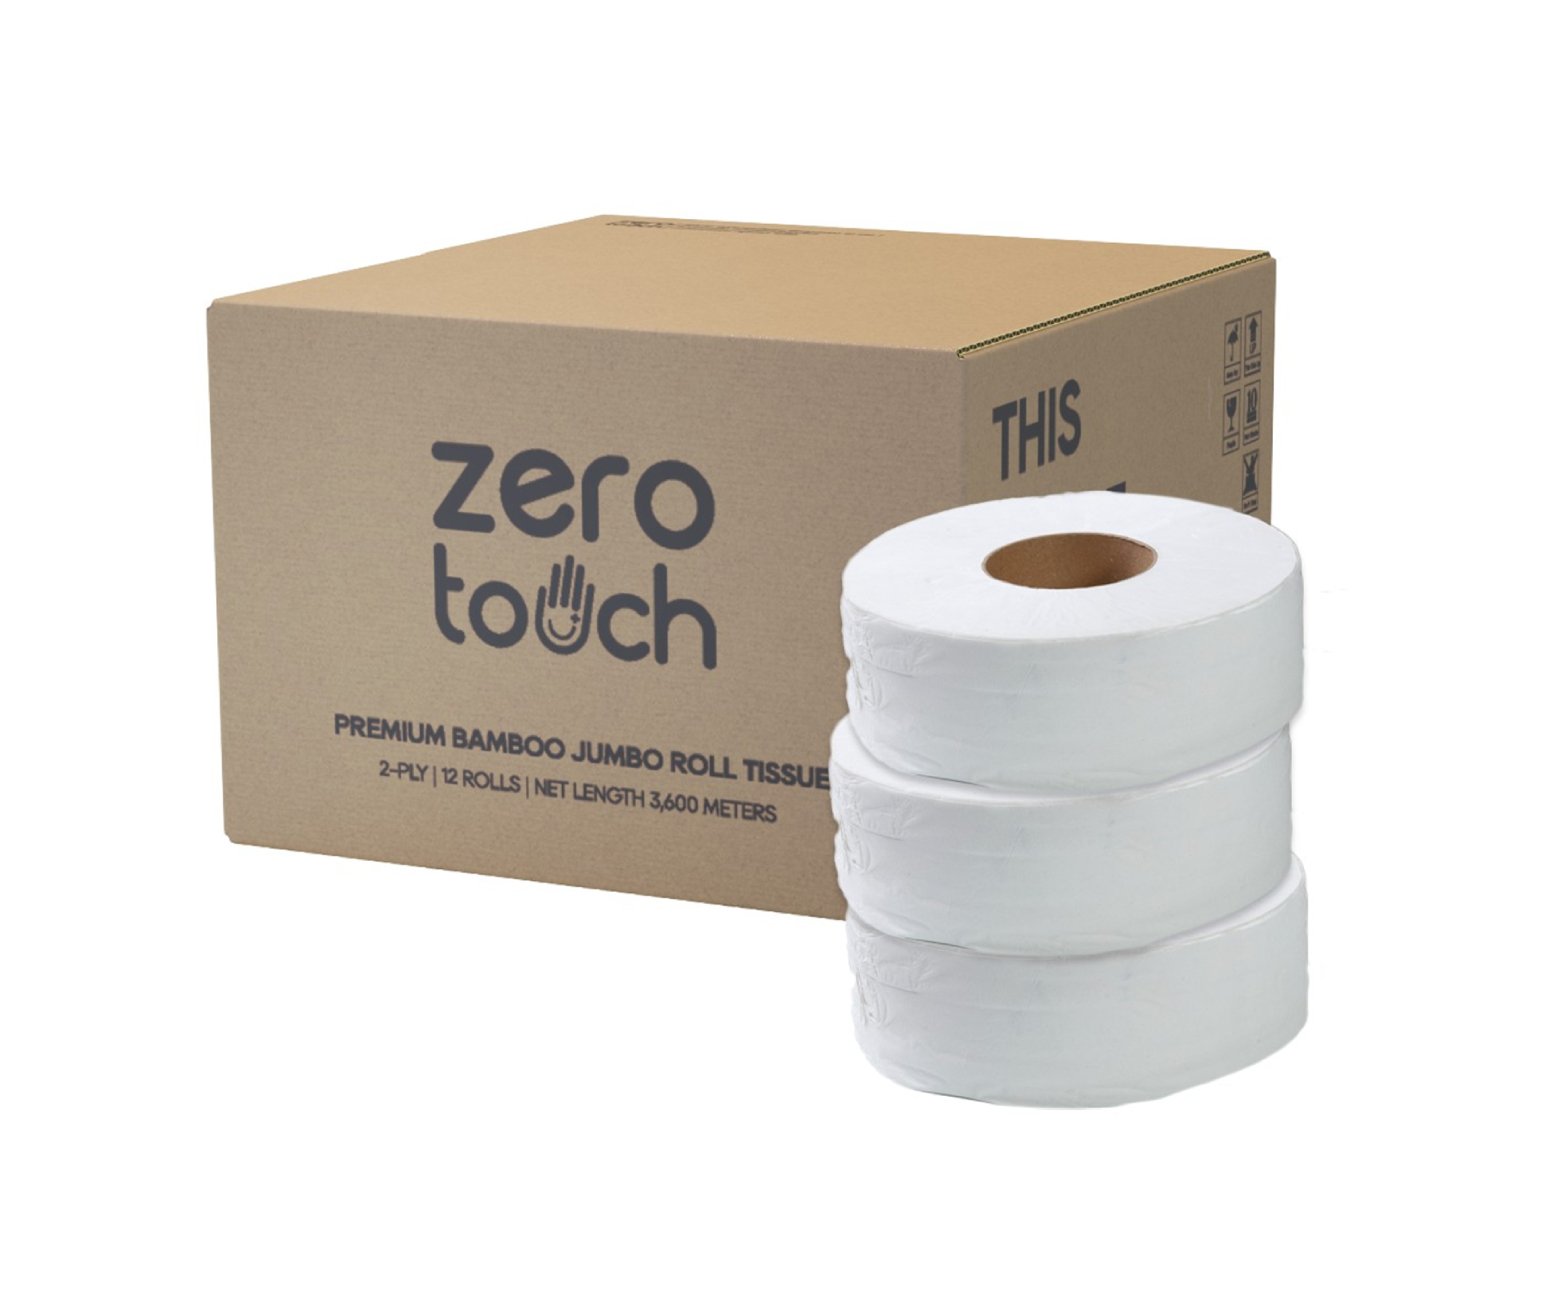 ZERO-TOUCH ทิชชู่เยื่อกระดาษบริสุทธิ์ 100% แบบม้วนใหญ่ หนา 2 ชั้น ยาว 300 เมตร